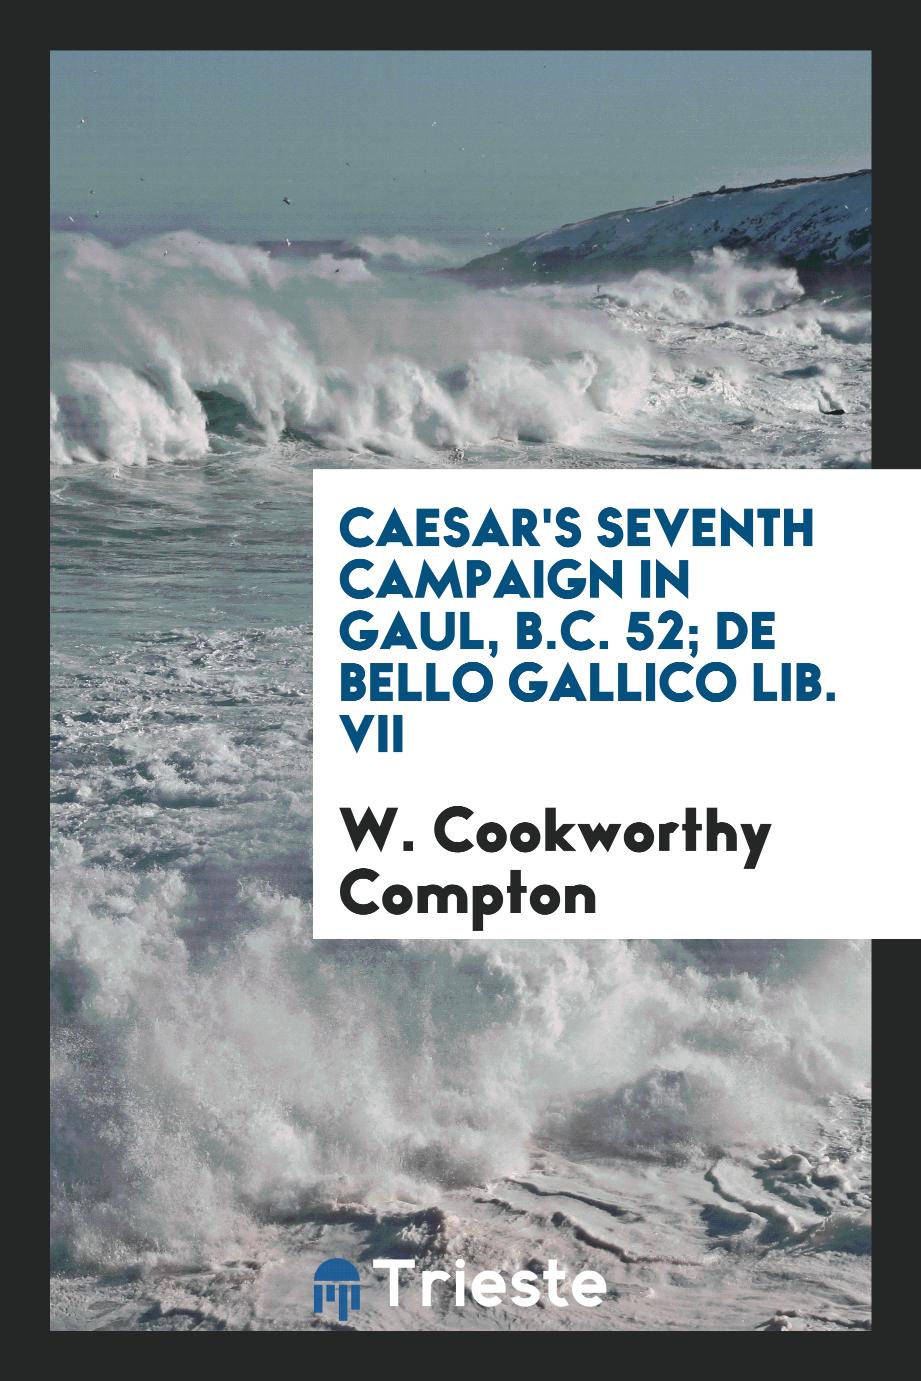 Caesar's seventh campaign in Gaul, B.C. 52; De bello gallico lib. VII